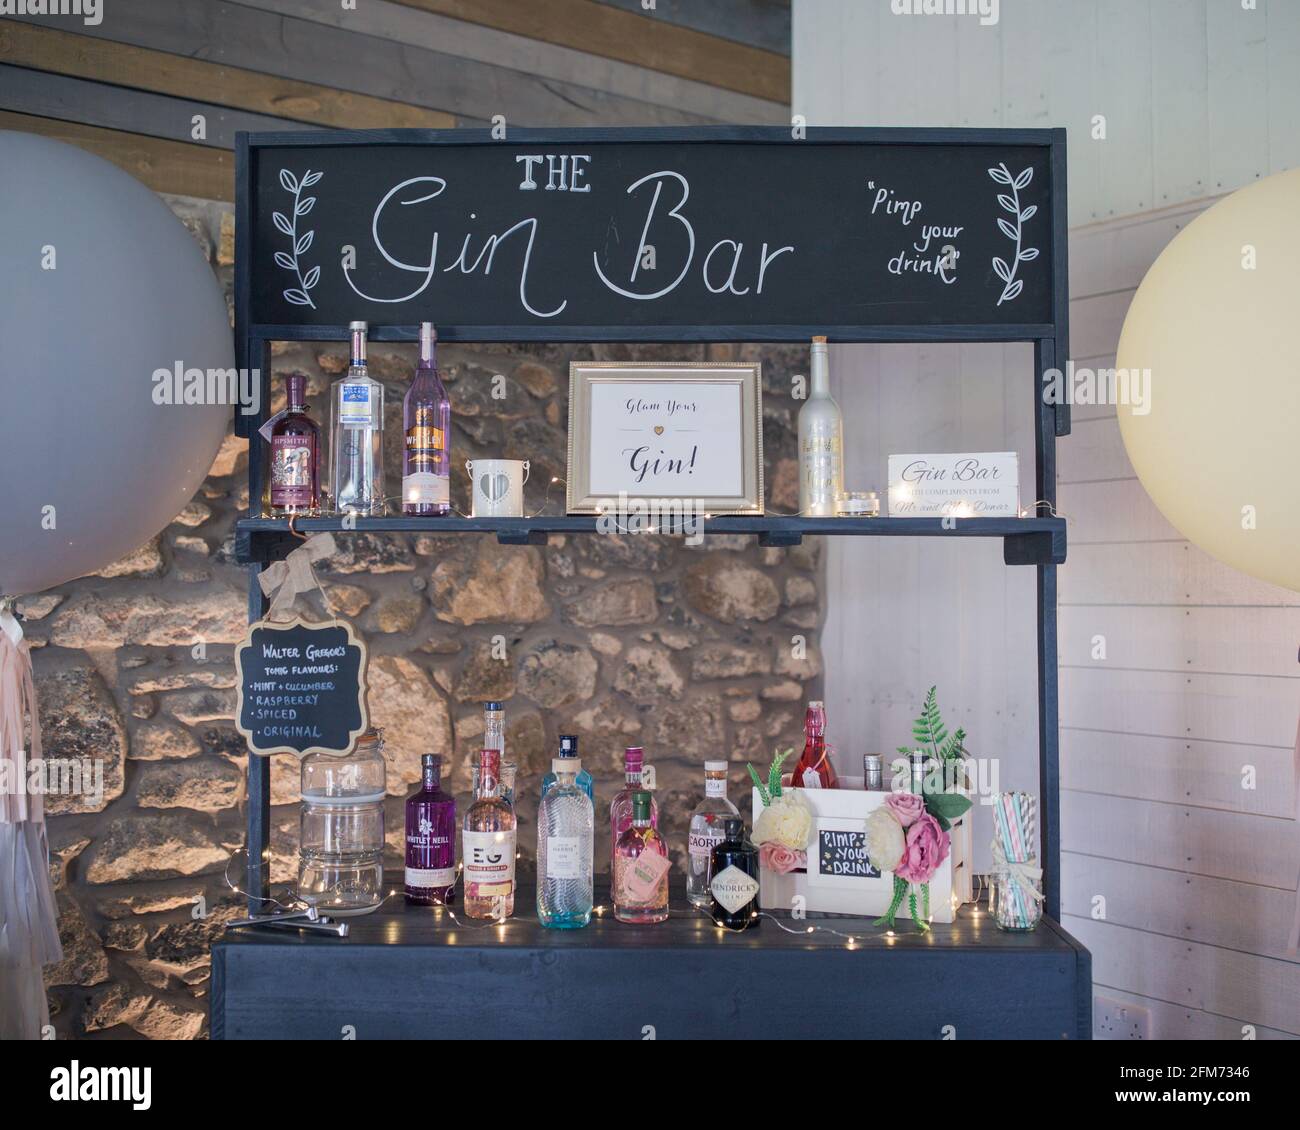 Eine Gin Bar mit vielen bunten Flaschen Gin vor einer Steinmauer bei einer Party, Veranstaltung oder Hochzeit Stockfoto